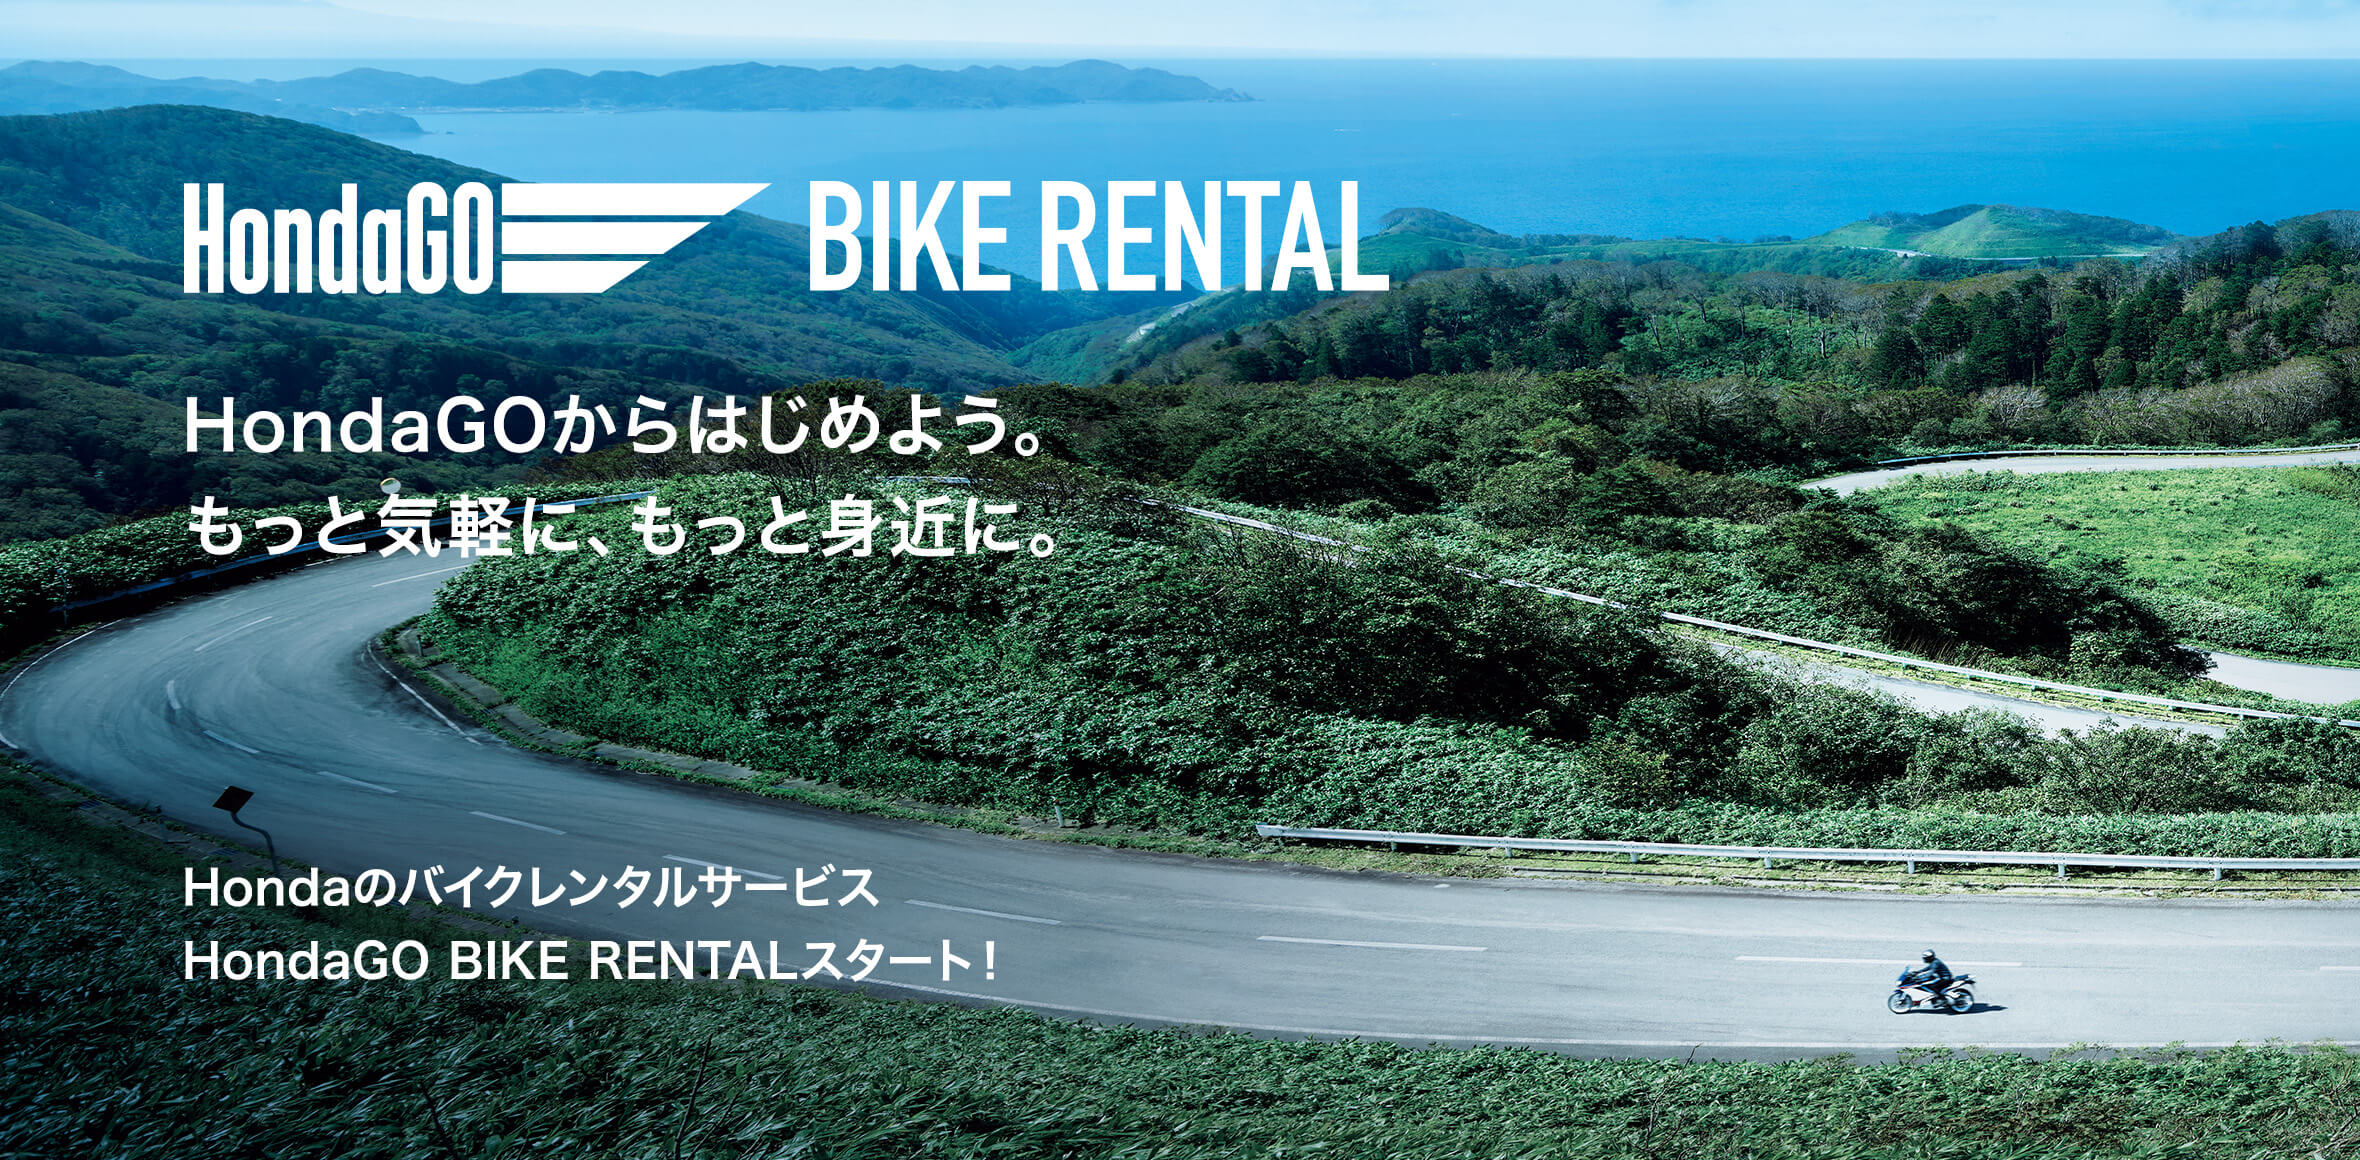 Honda Go BIKE RENTAL